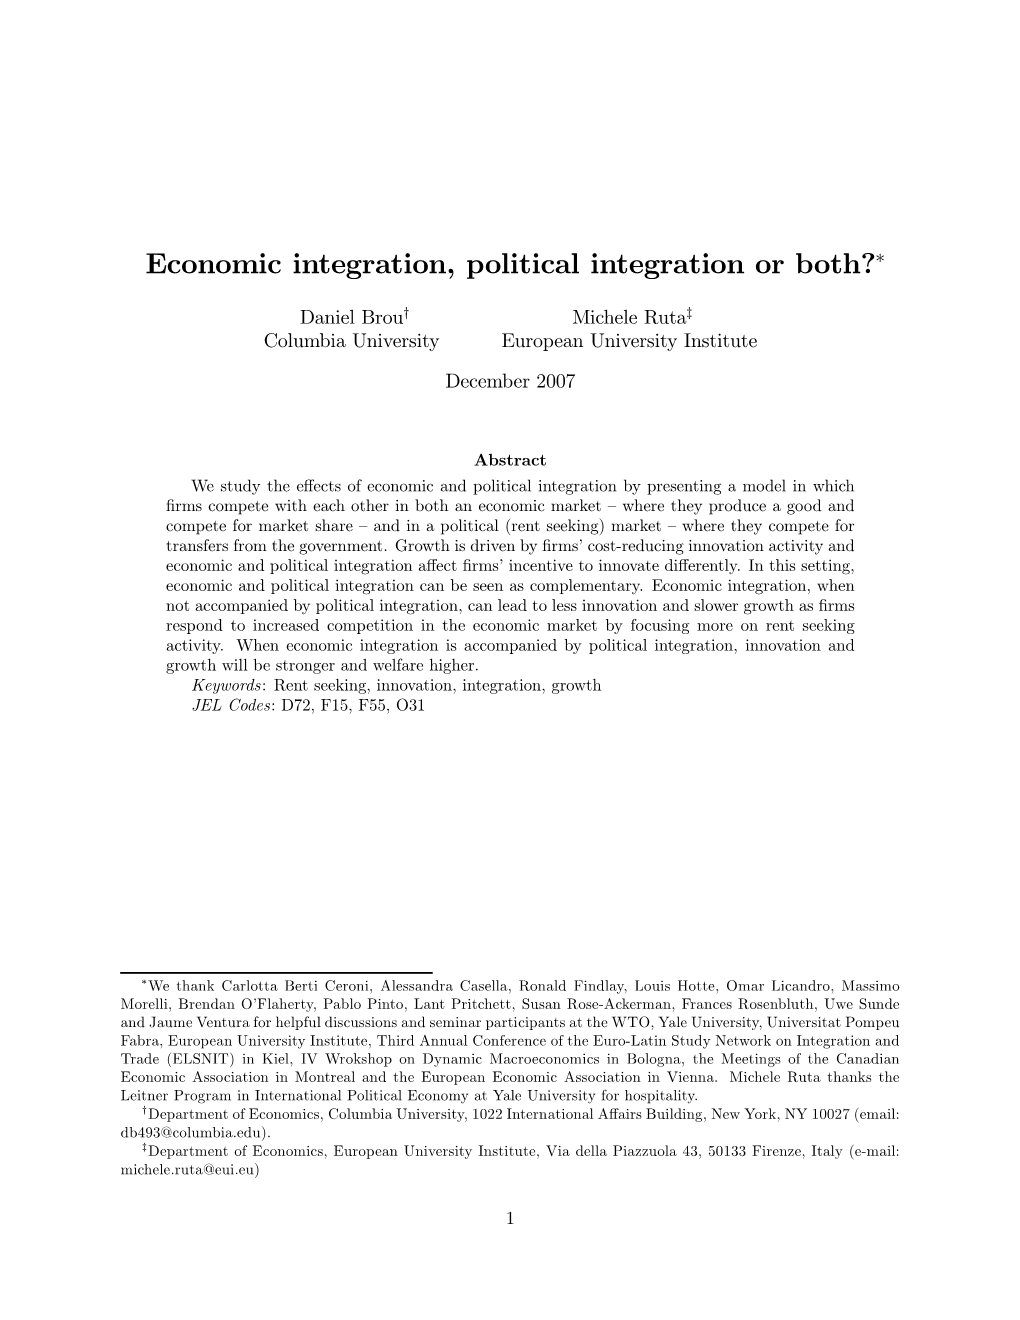 Economic Integration, Political Integration Or Both?∗